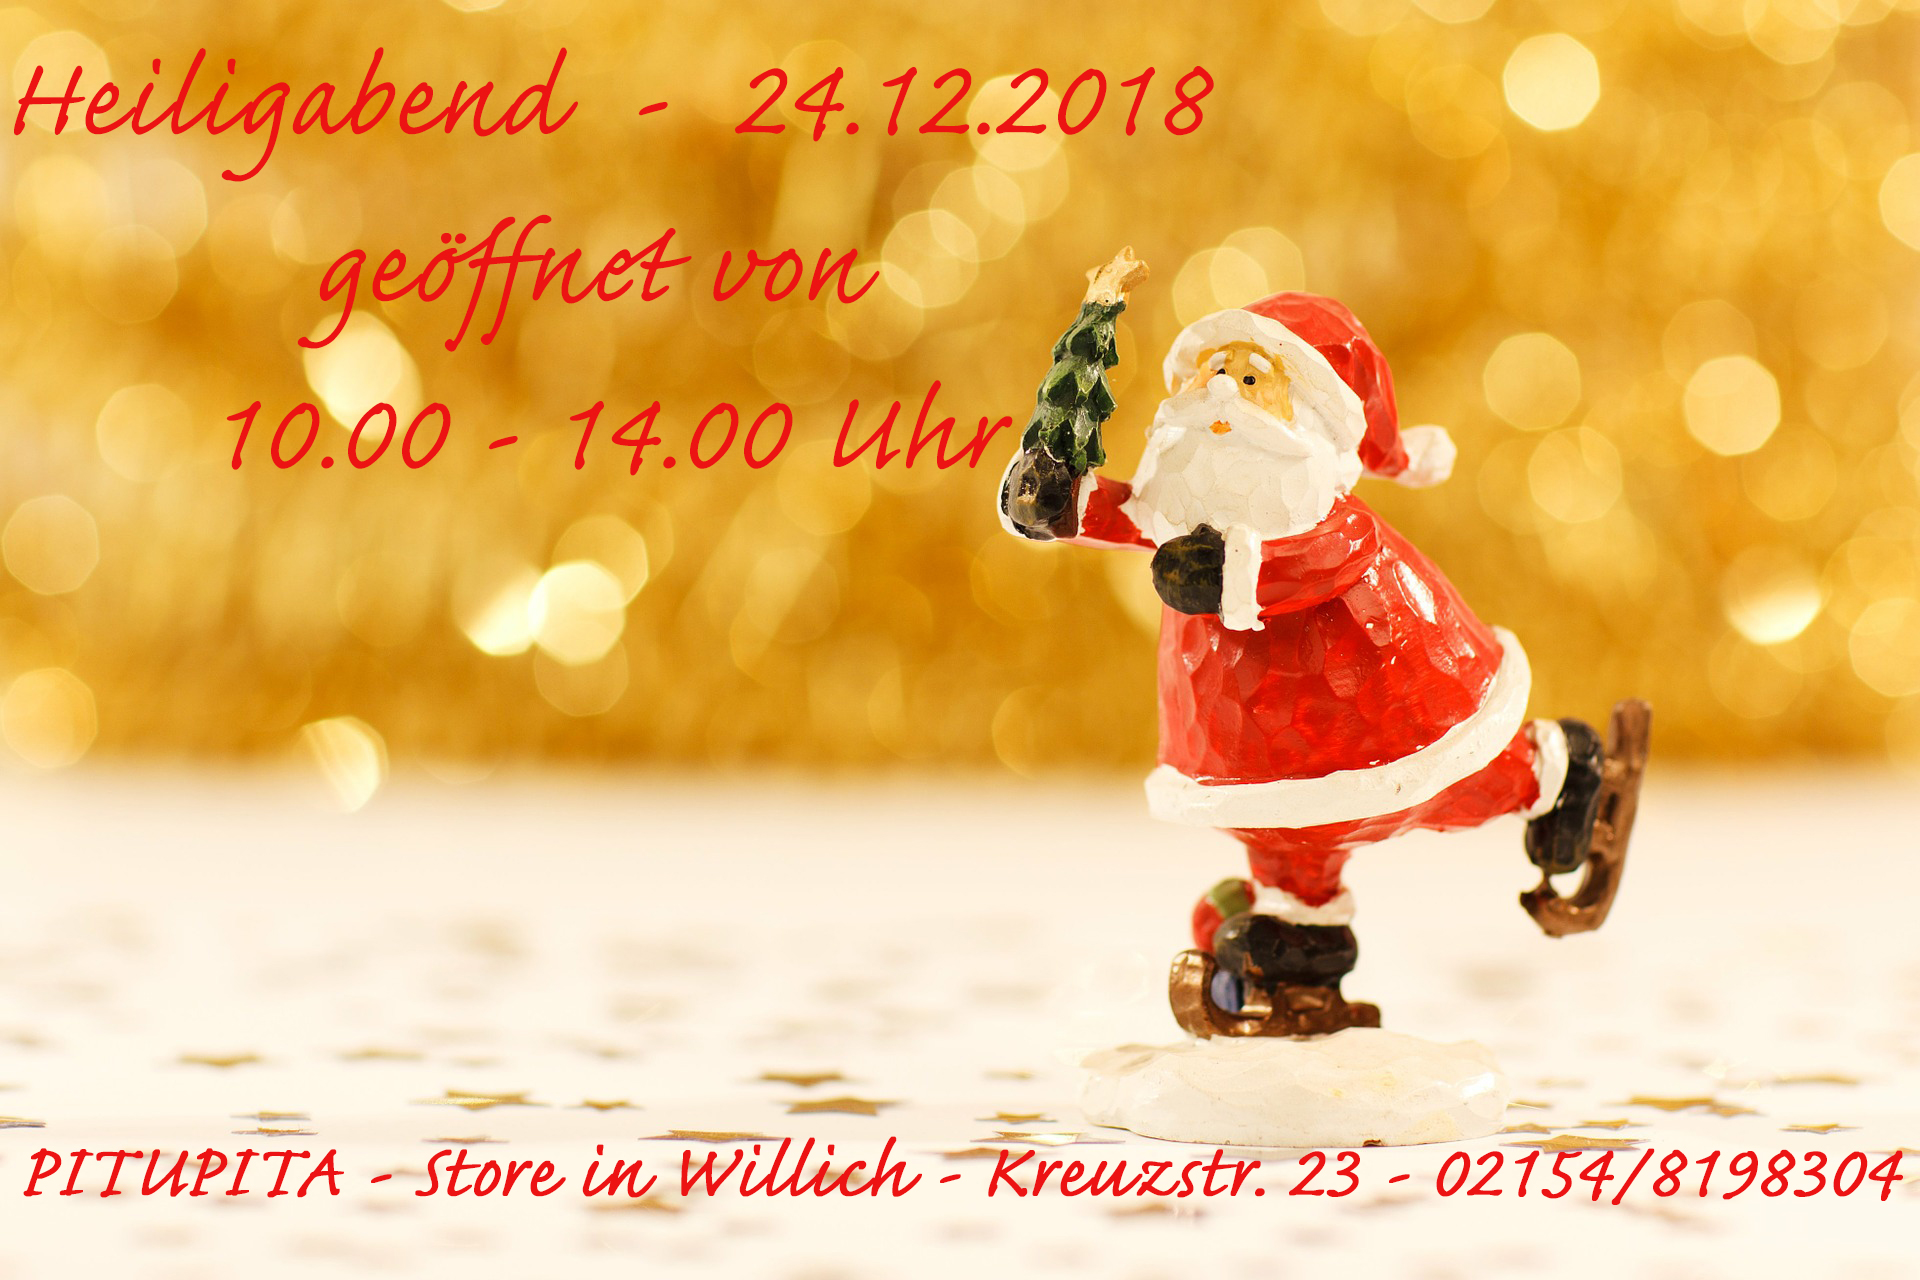 Öffnungszeiten am 24.12.2018 - STORE in Willich - 